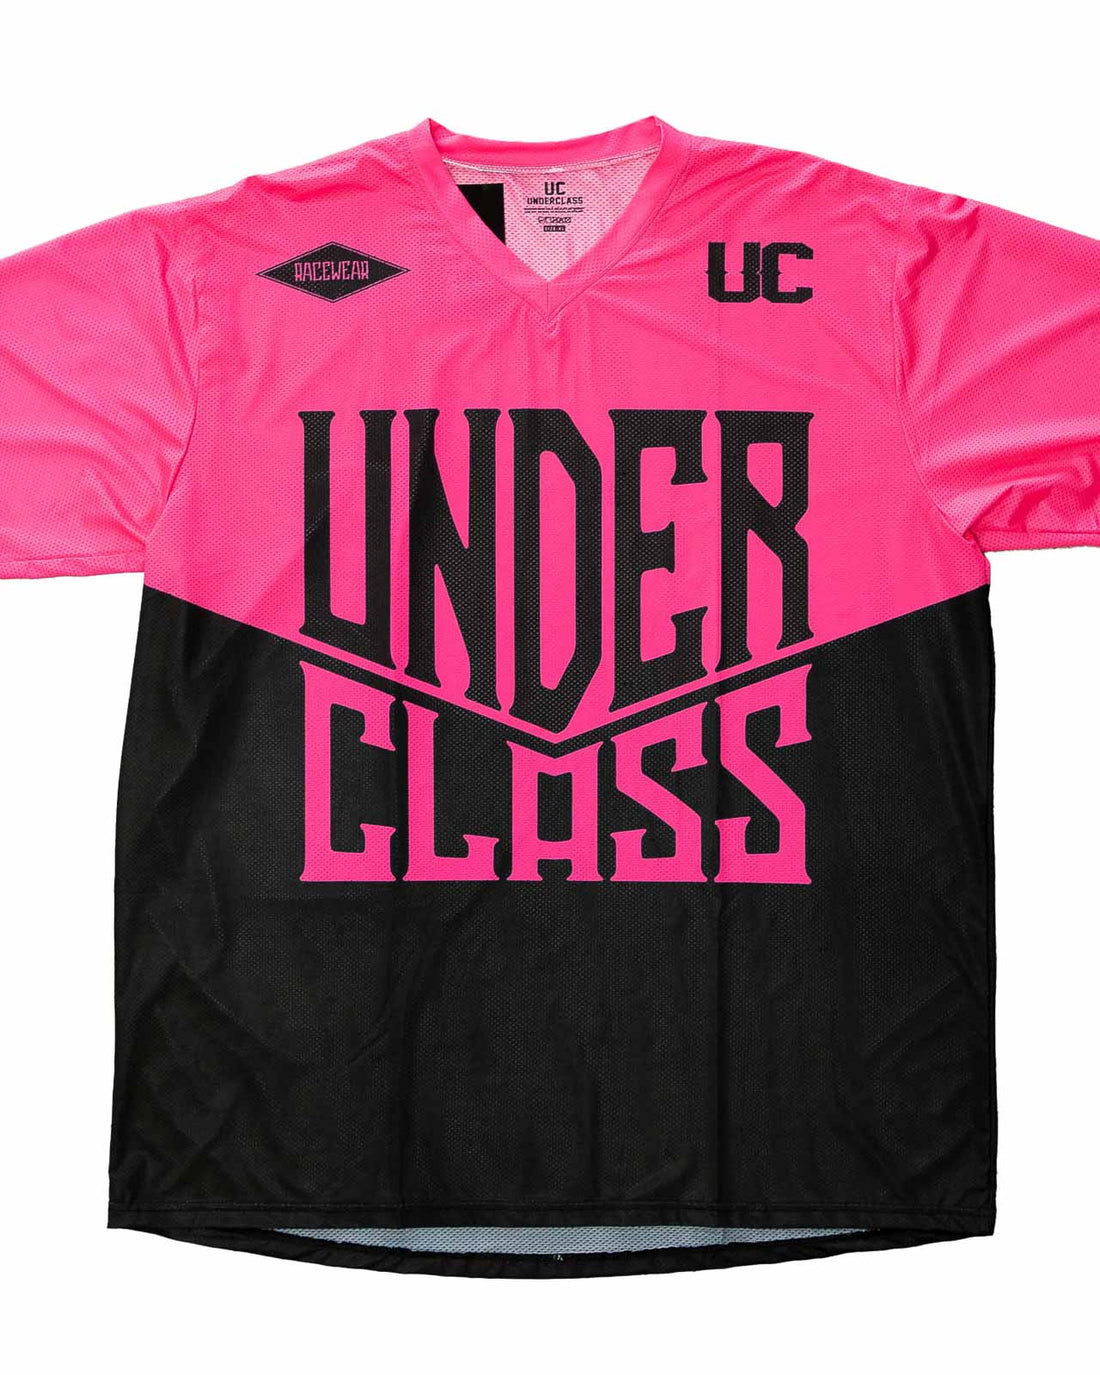 Underclass MX Air Jersey - Long Sleeve - Flo Pink